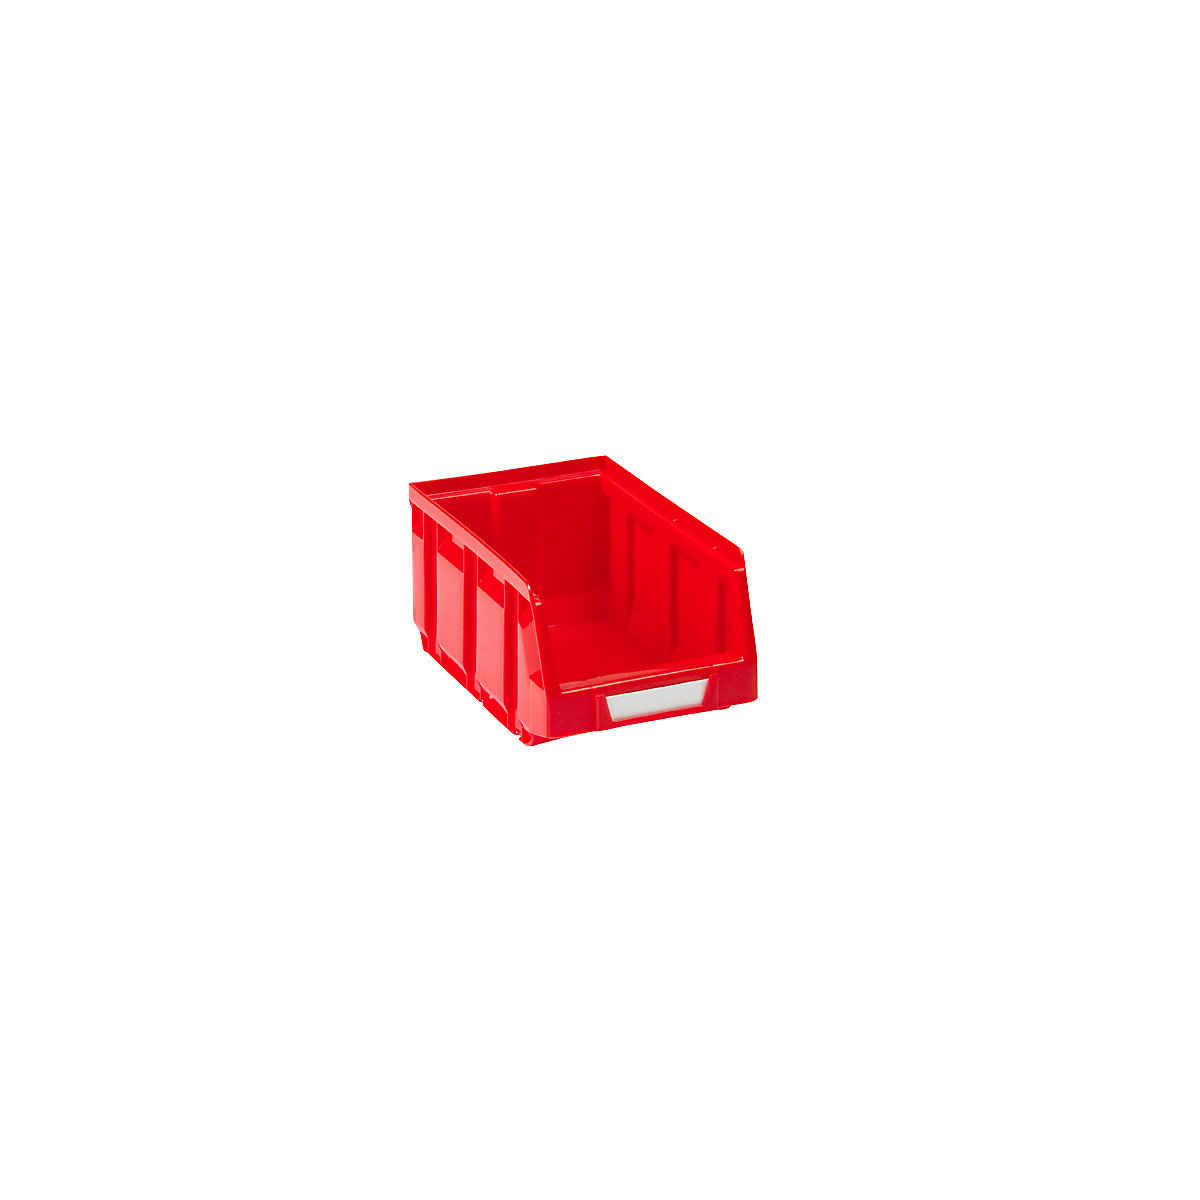 Sichtlagerkasten aus Polyethylen, LxBxH 167 x 105 x 82 mm, rot, VE 48 Stk-11